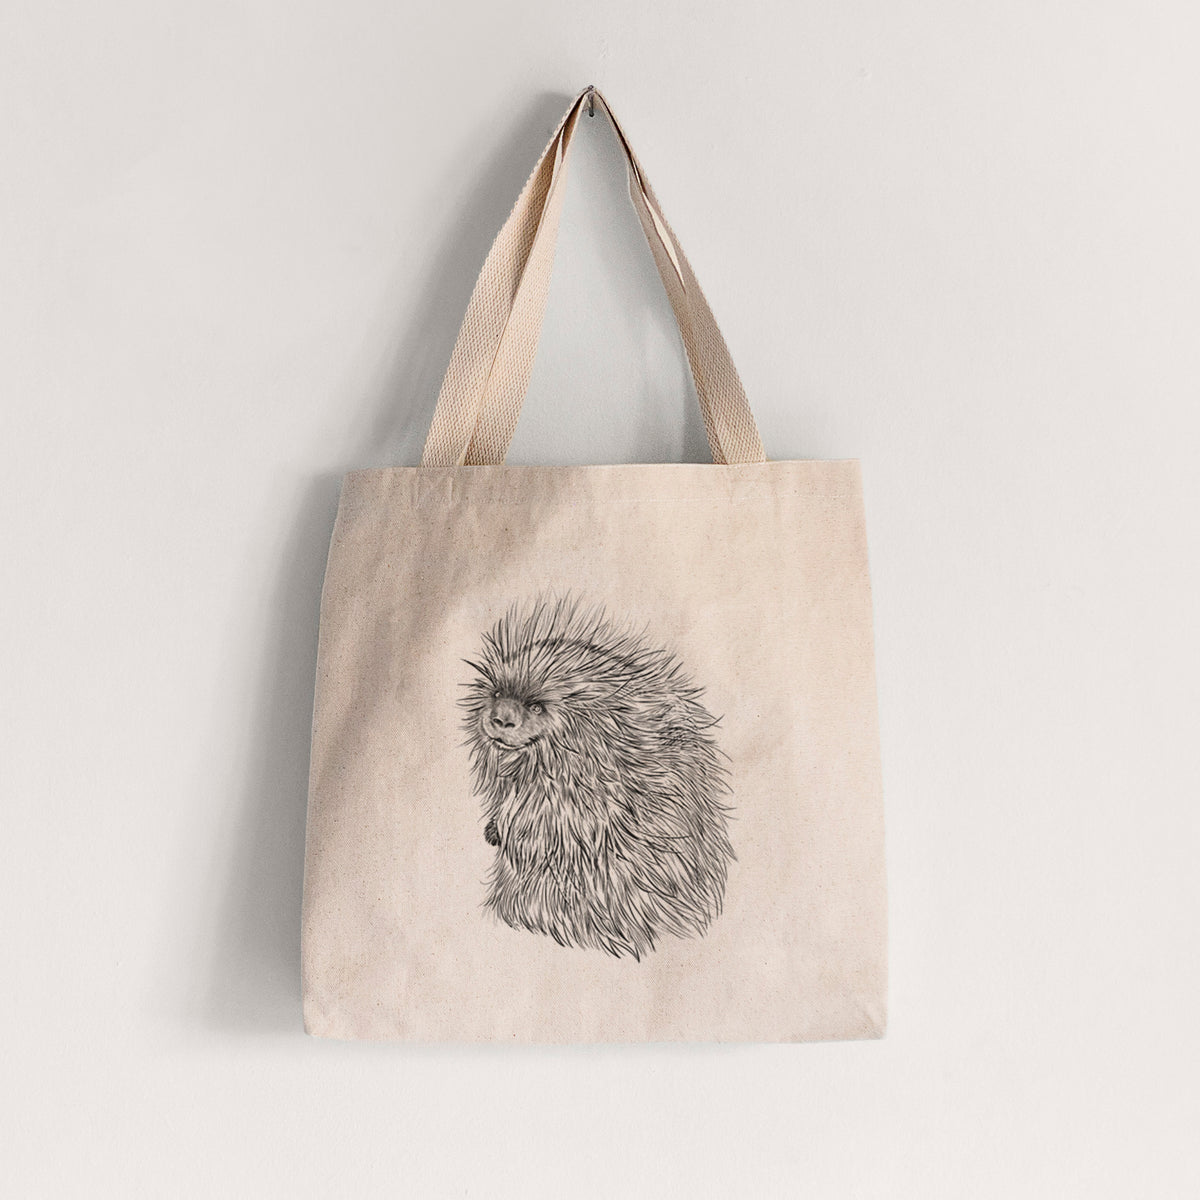 North American Porcupine - Erethizon dorsatum - Tote Bag